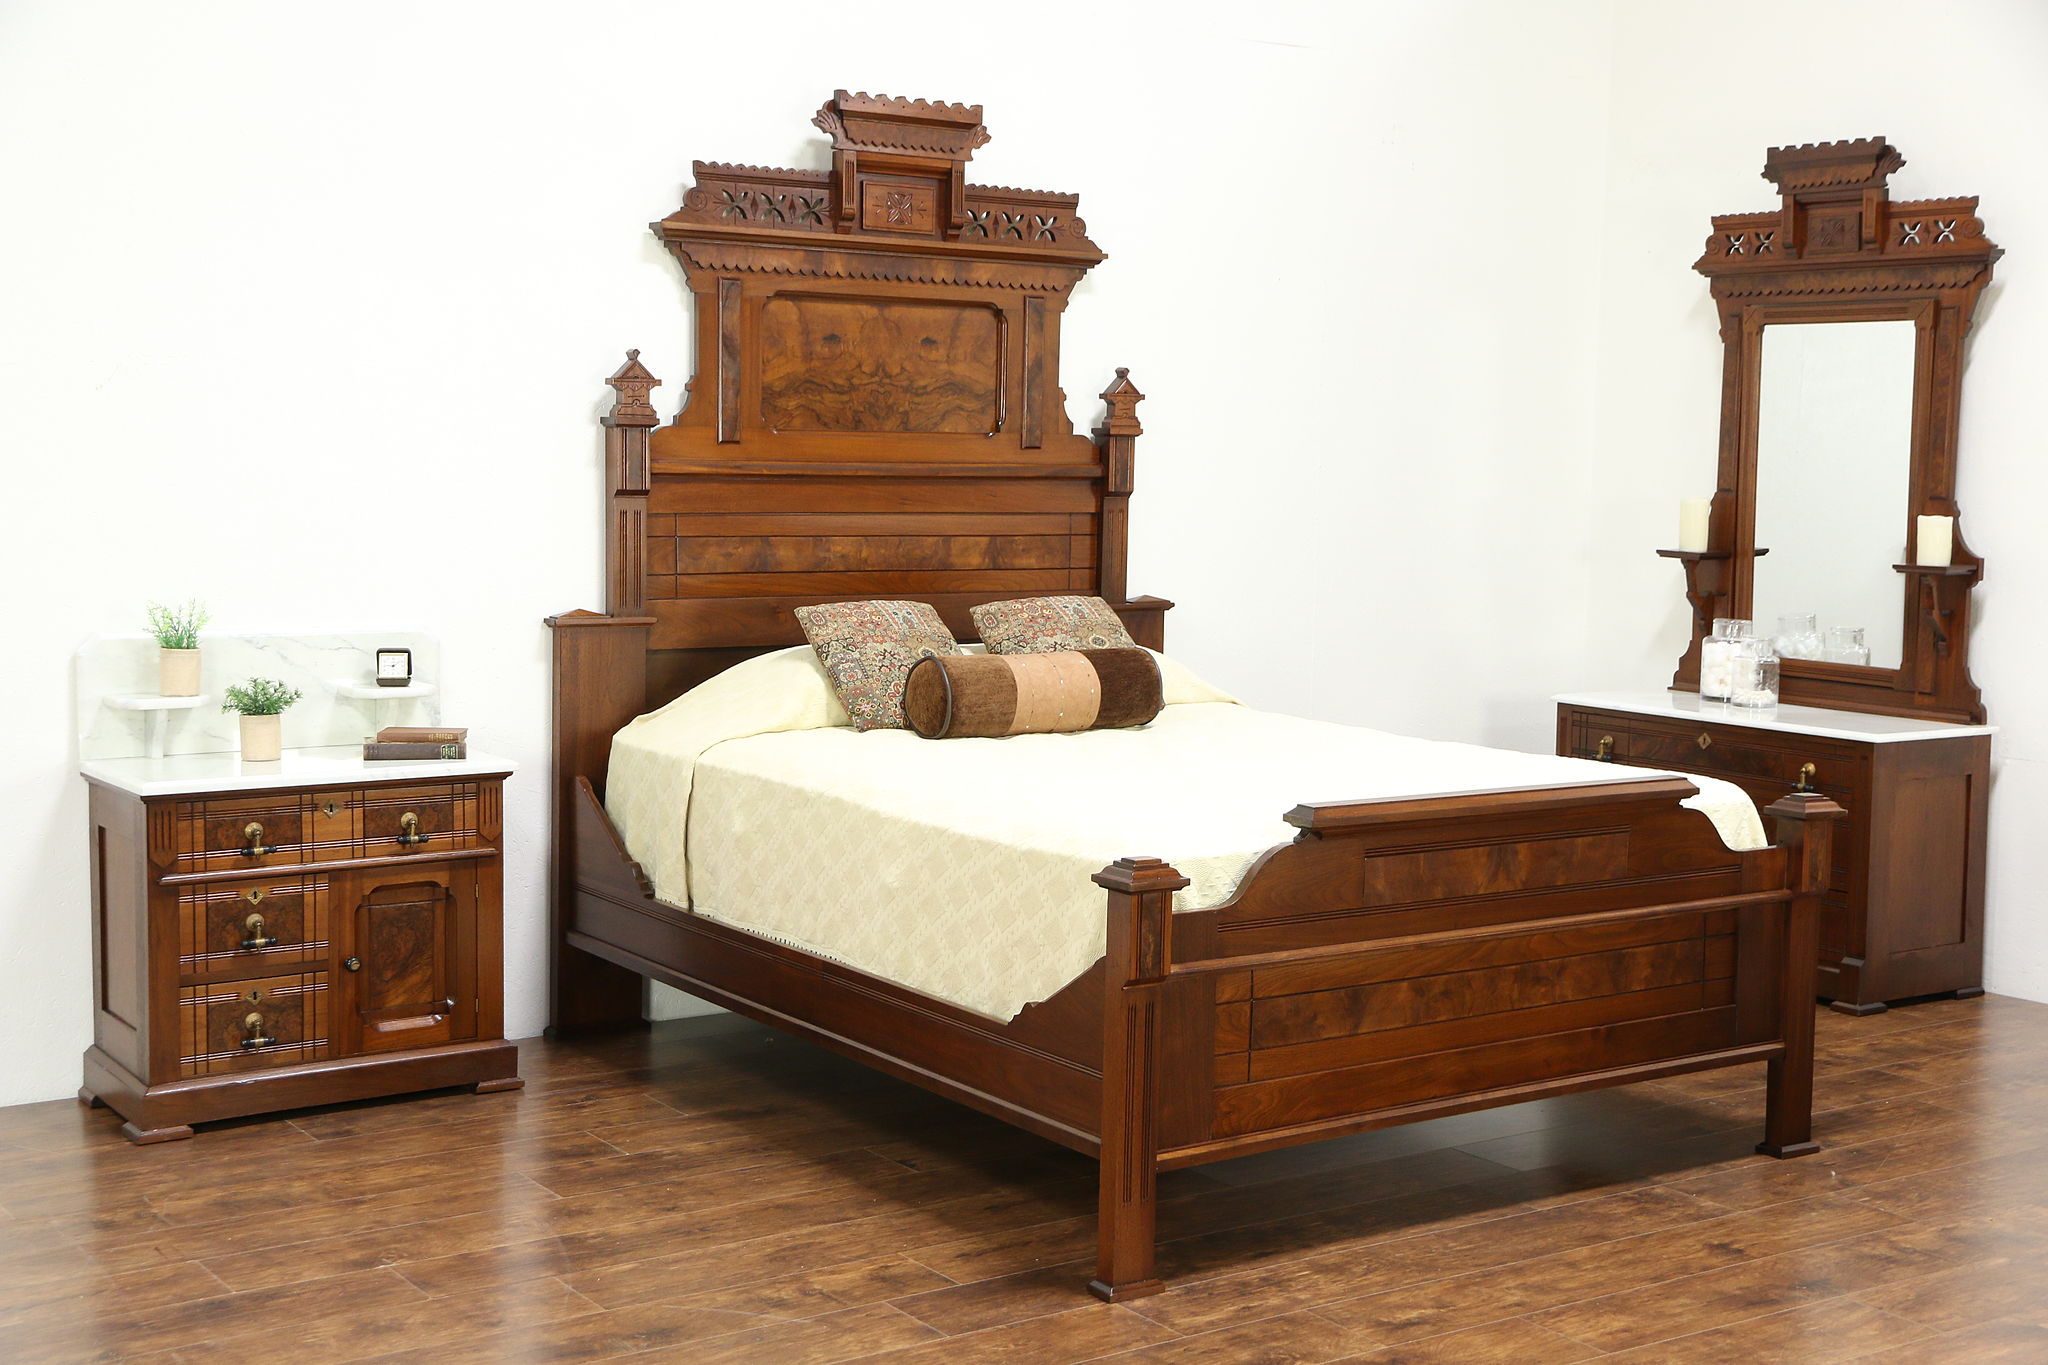 antique walnut bedroom furniture set